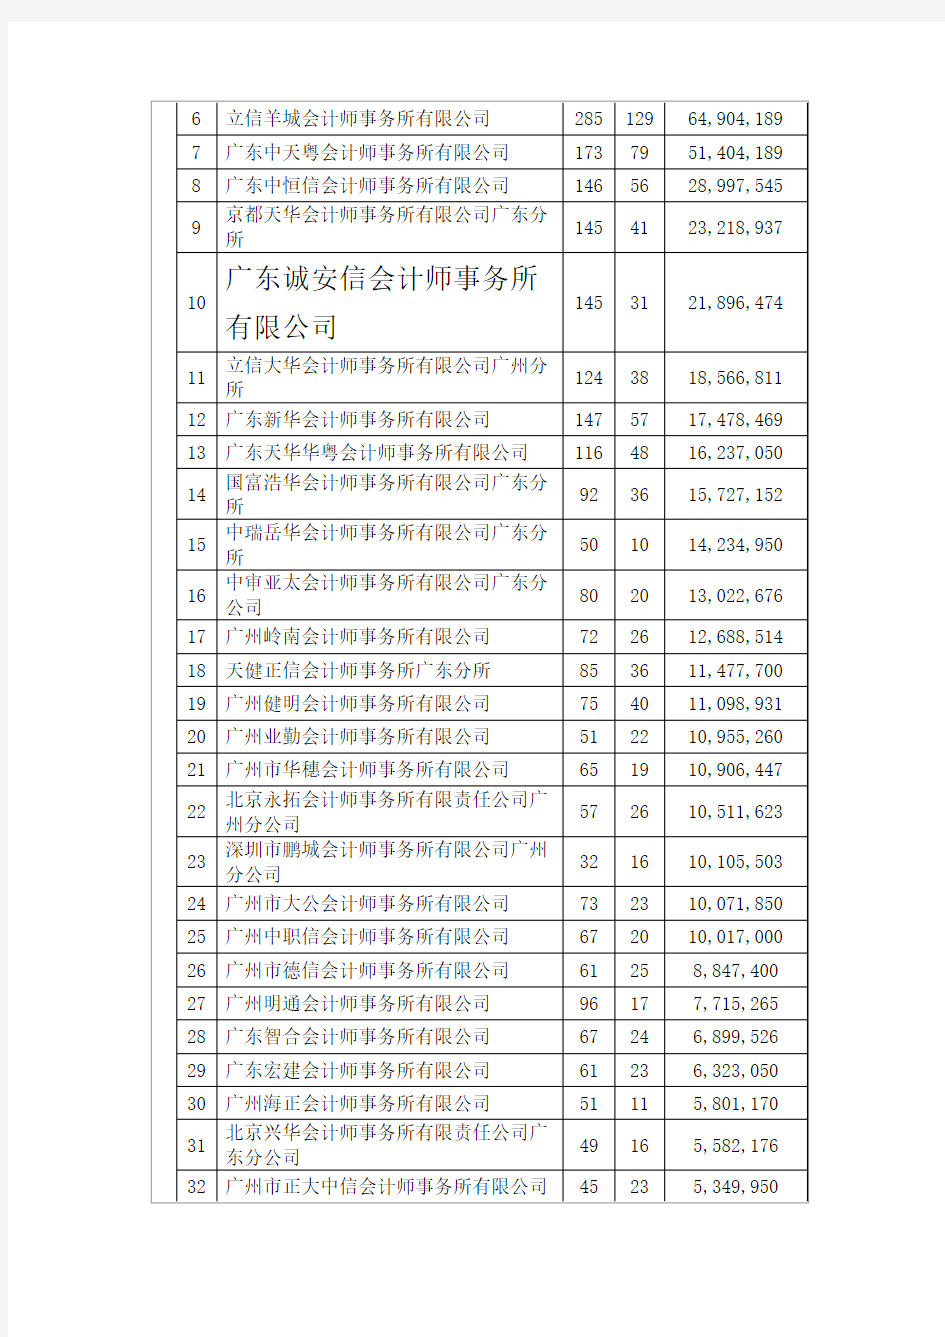 广州会计师事务所收入排名我所名列第10.docx